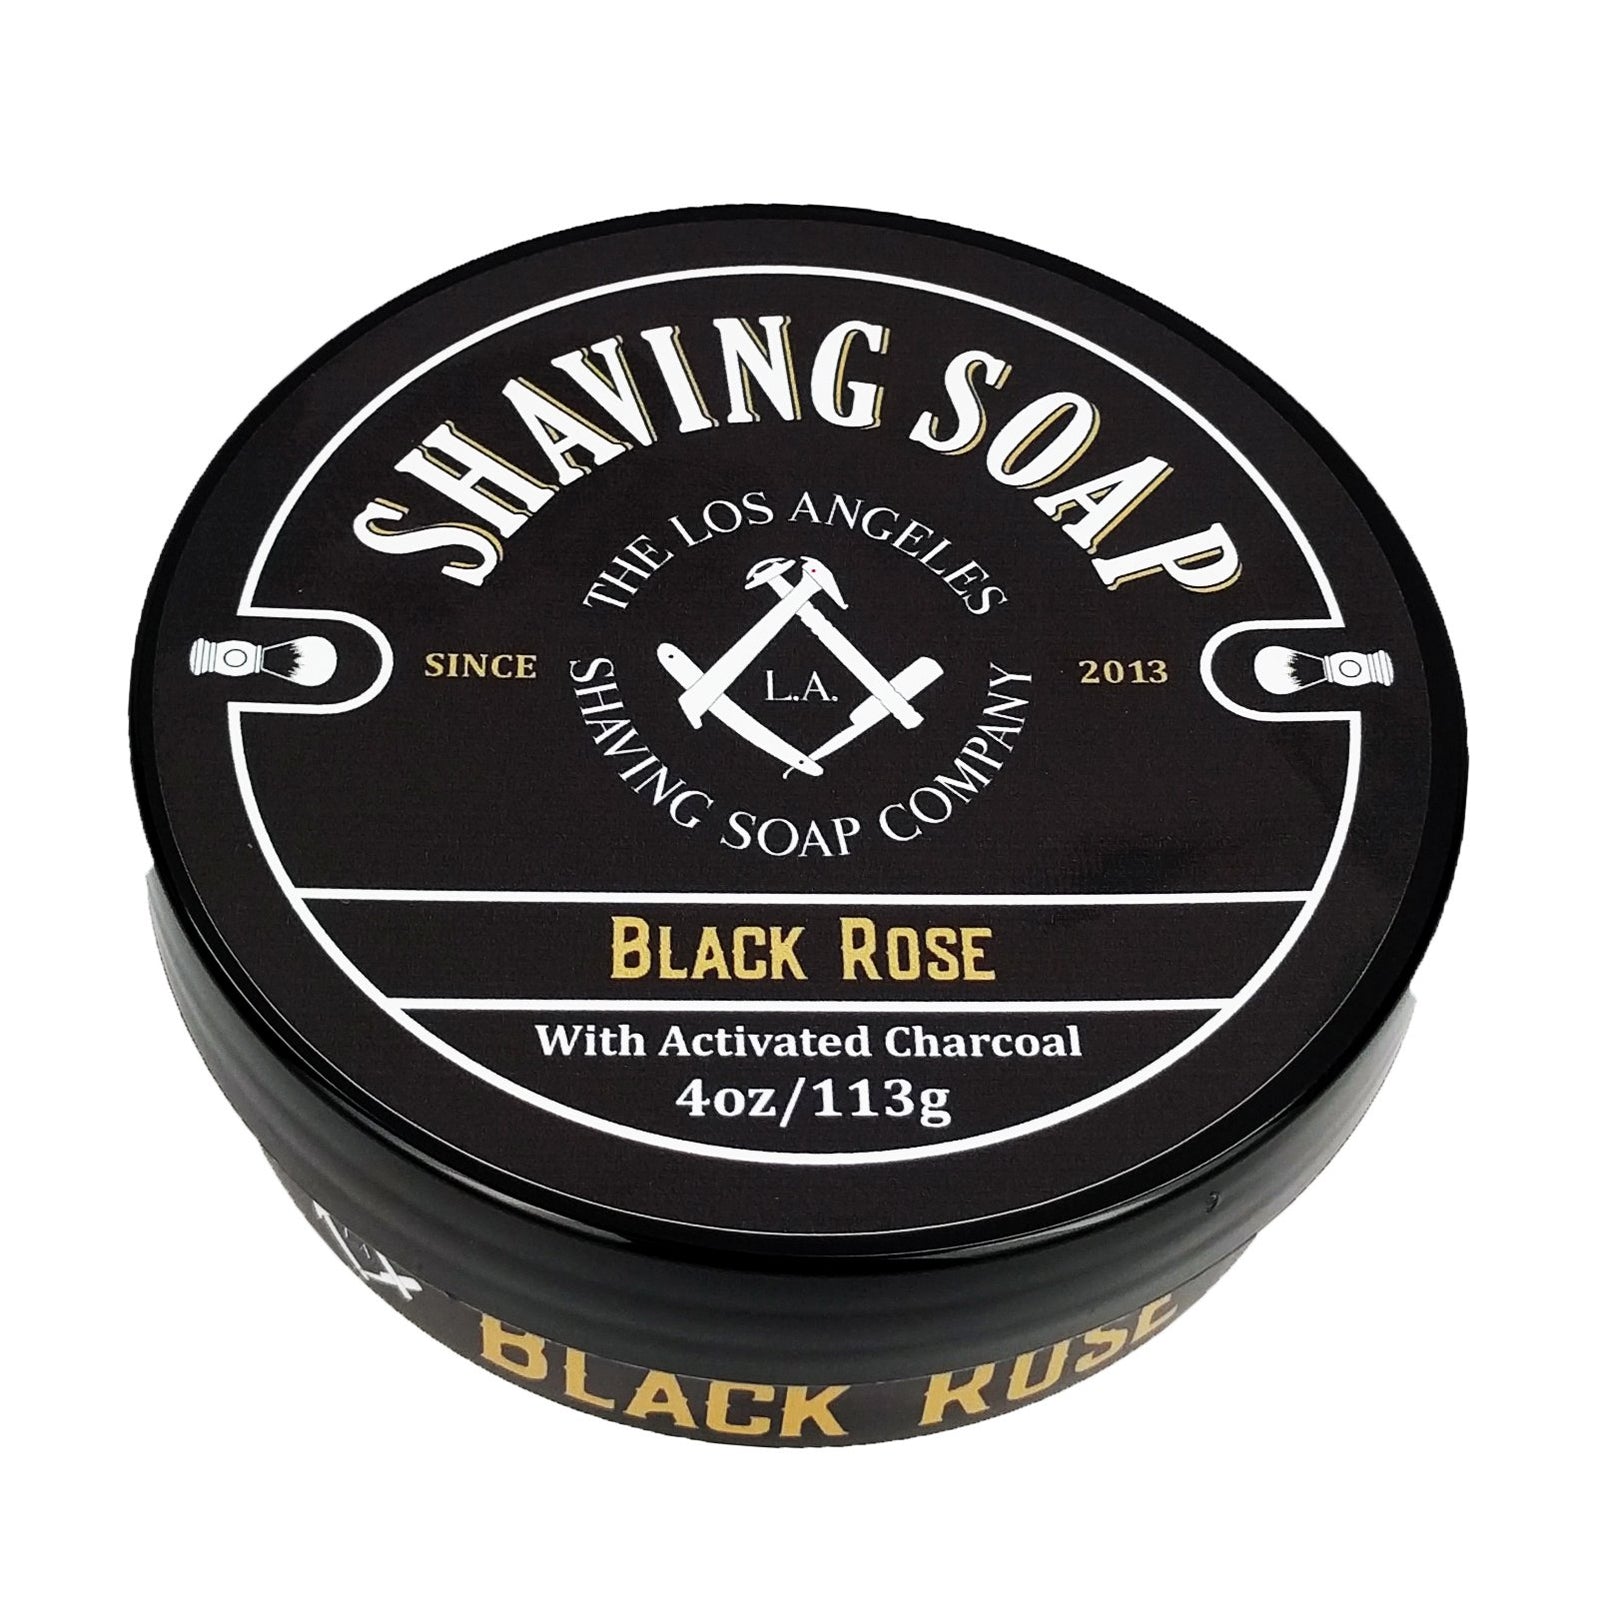 LA Shaving Soap Co - The Black Rose Vegan Shaving Soap